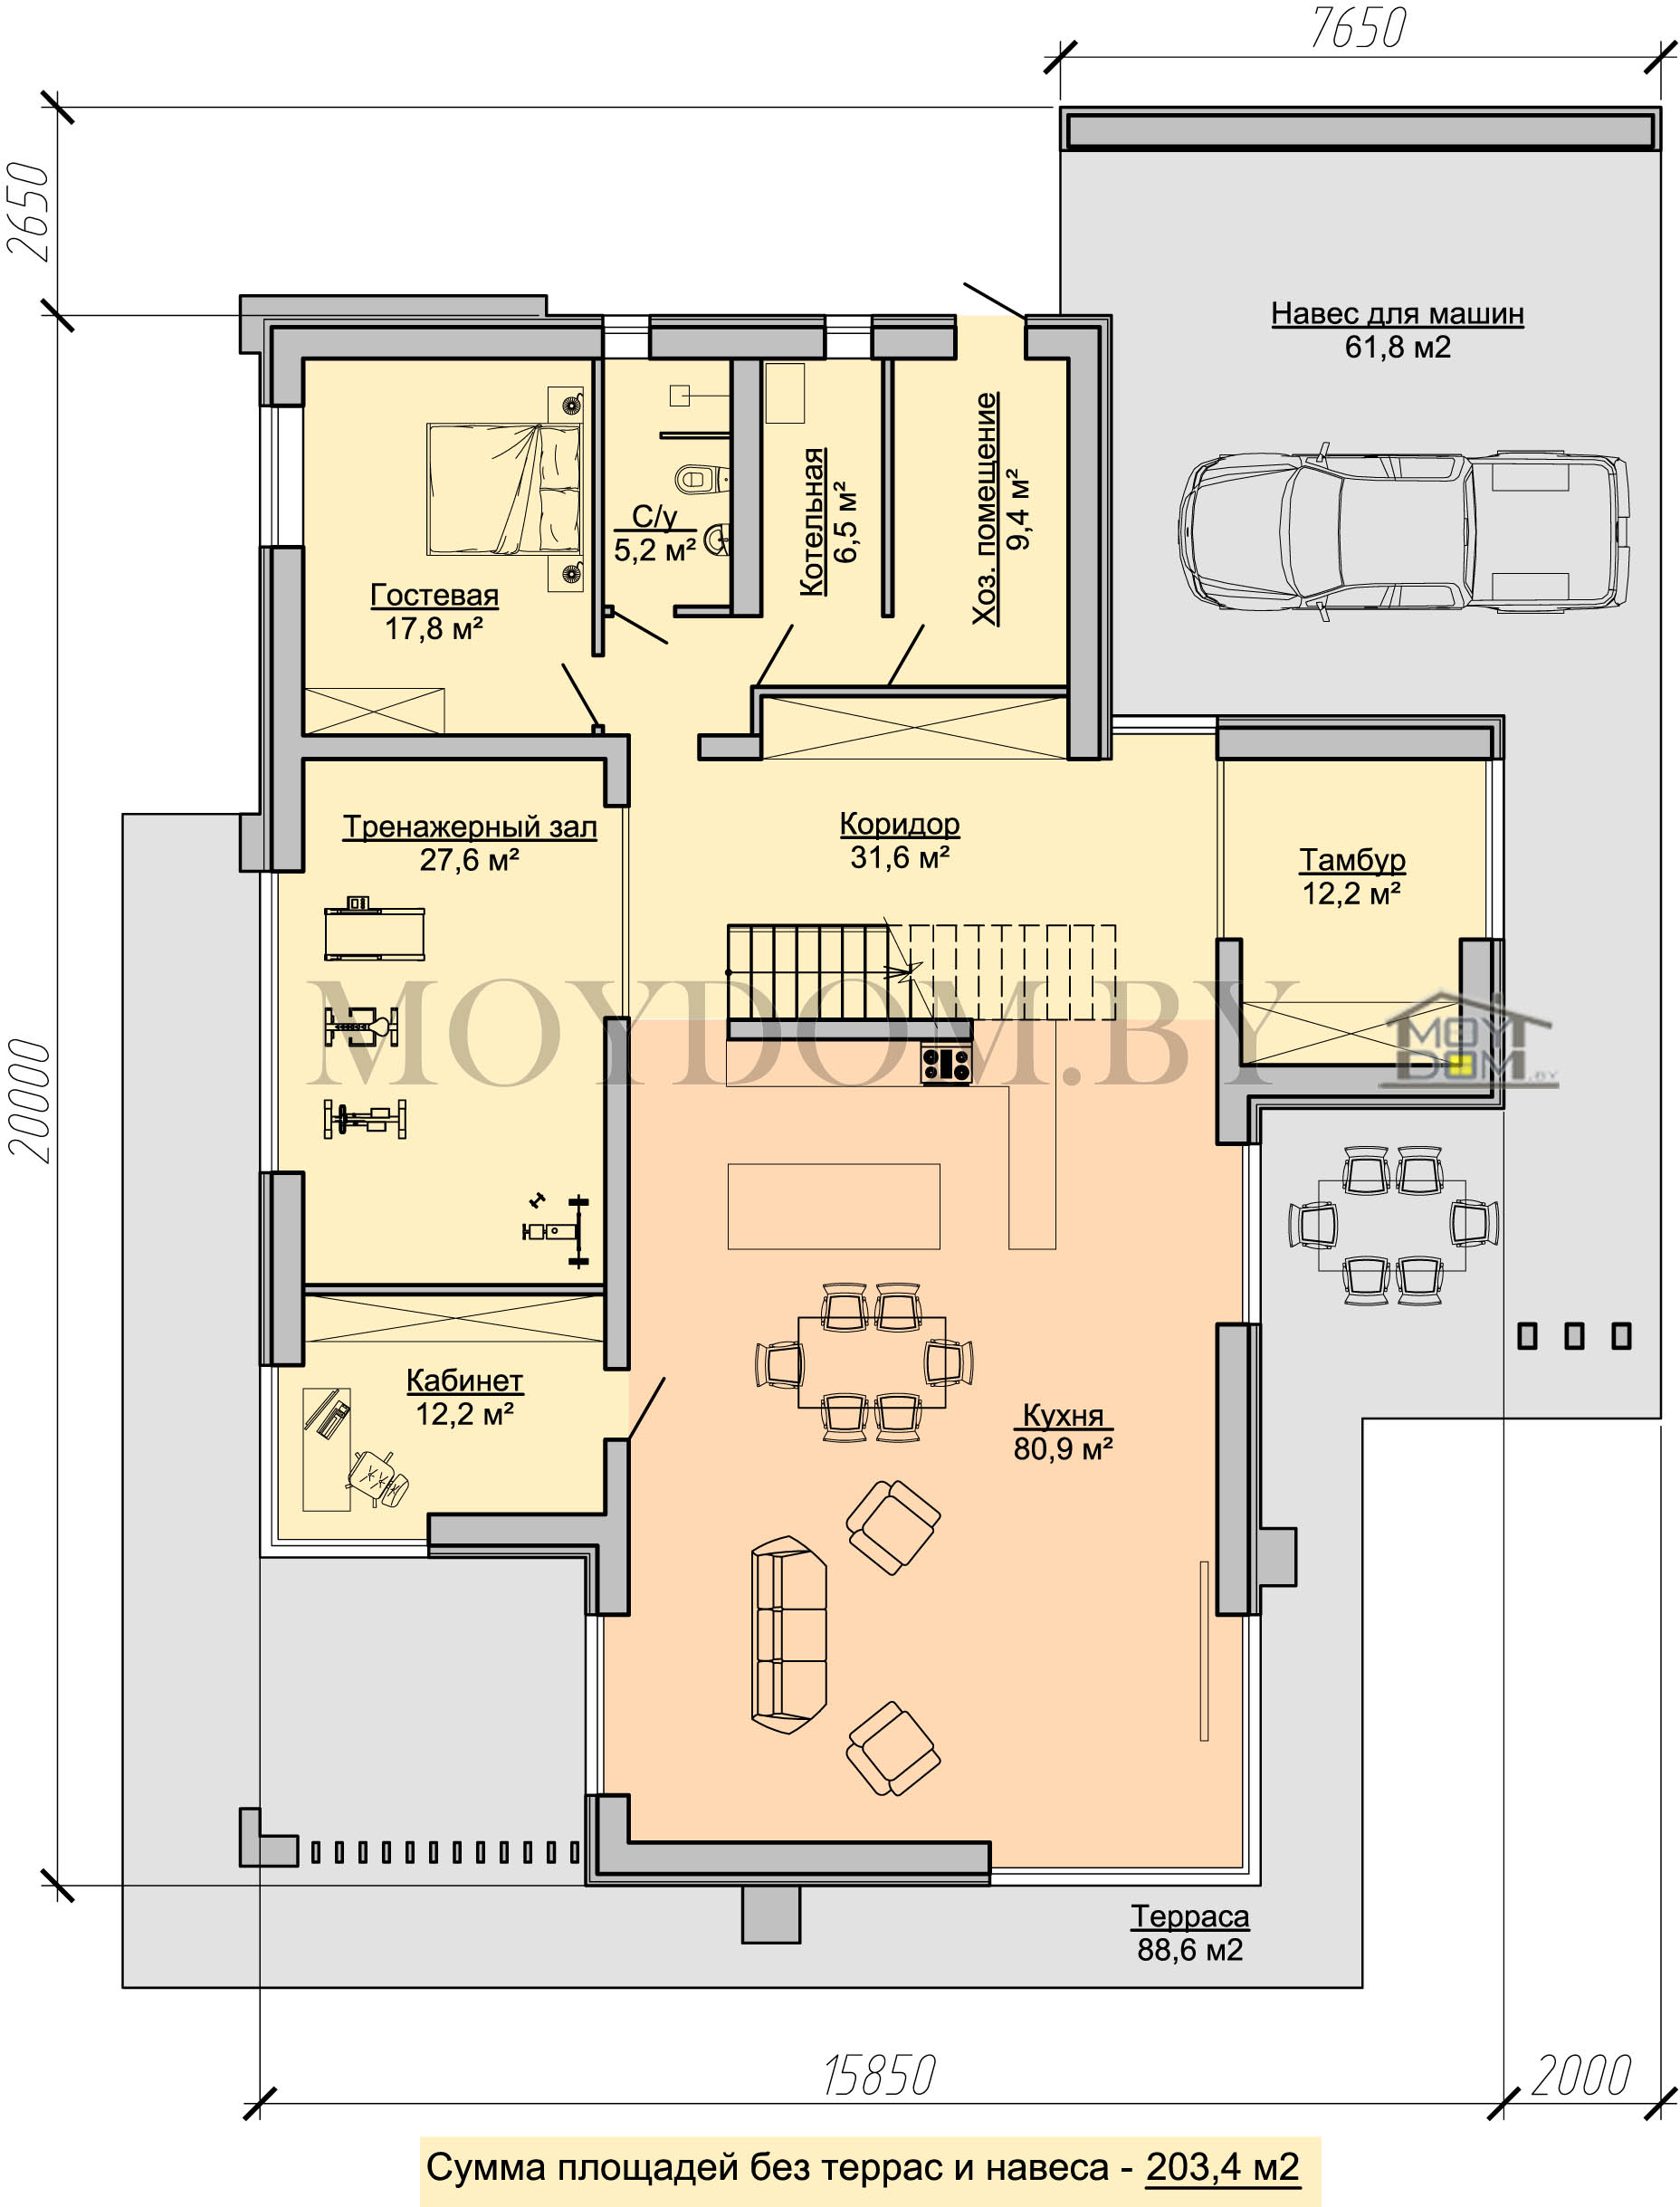 план современного дома 16 на 20 с огромной гостиной, тренажёрным 